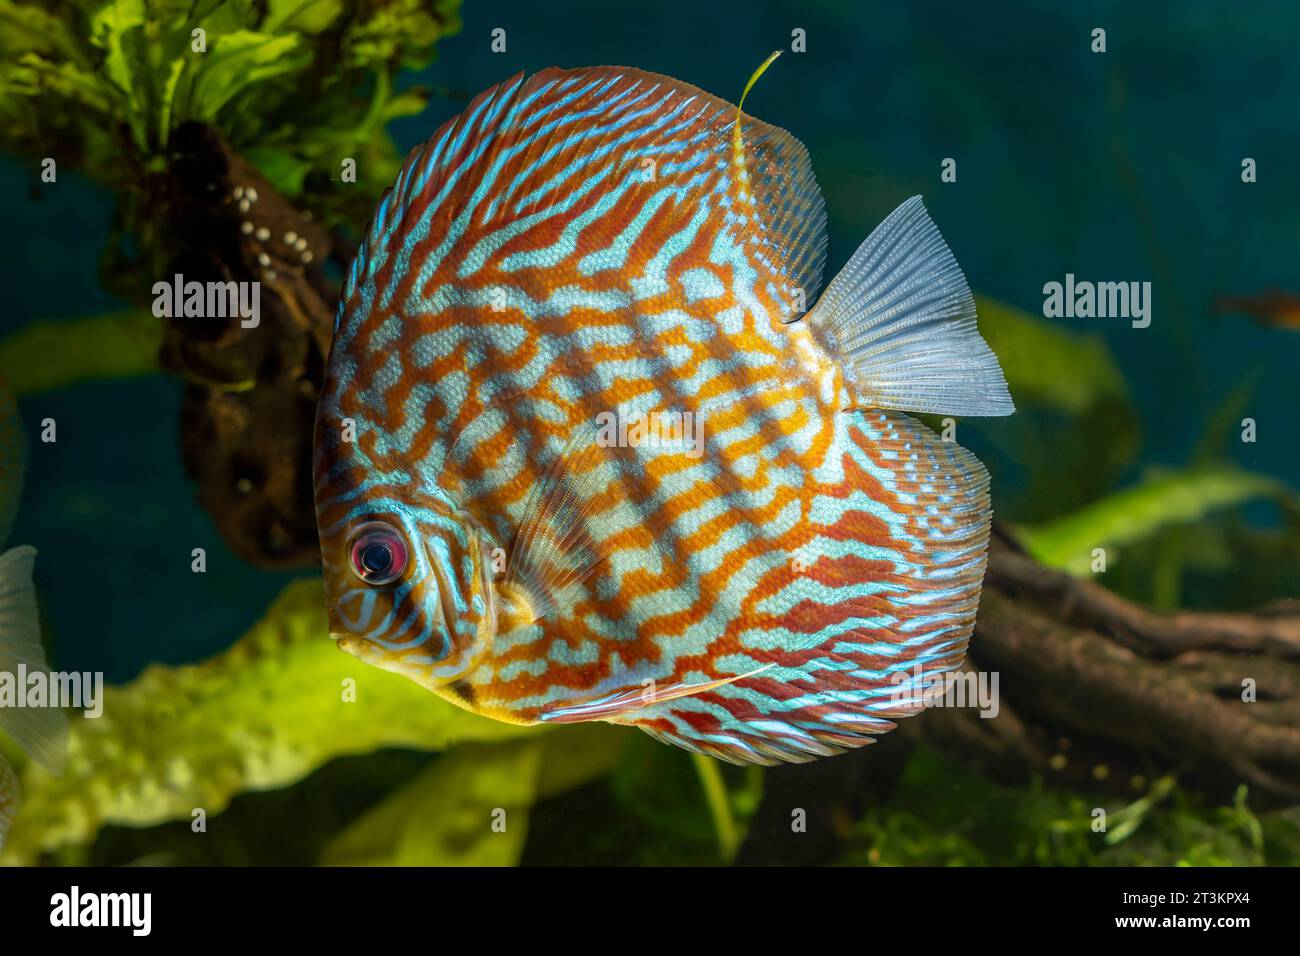 Discus, freshwater fish (genus Symphysodon) in aquarium Stock Photo